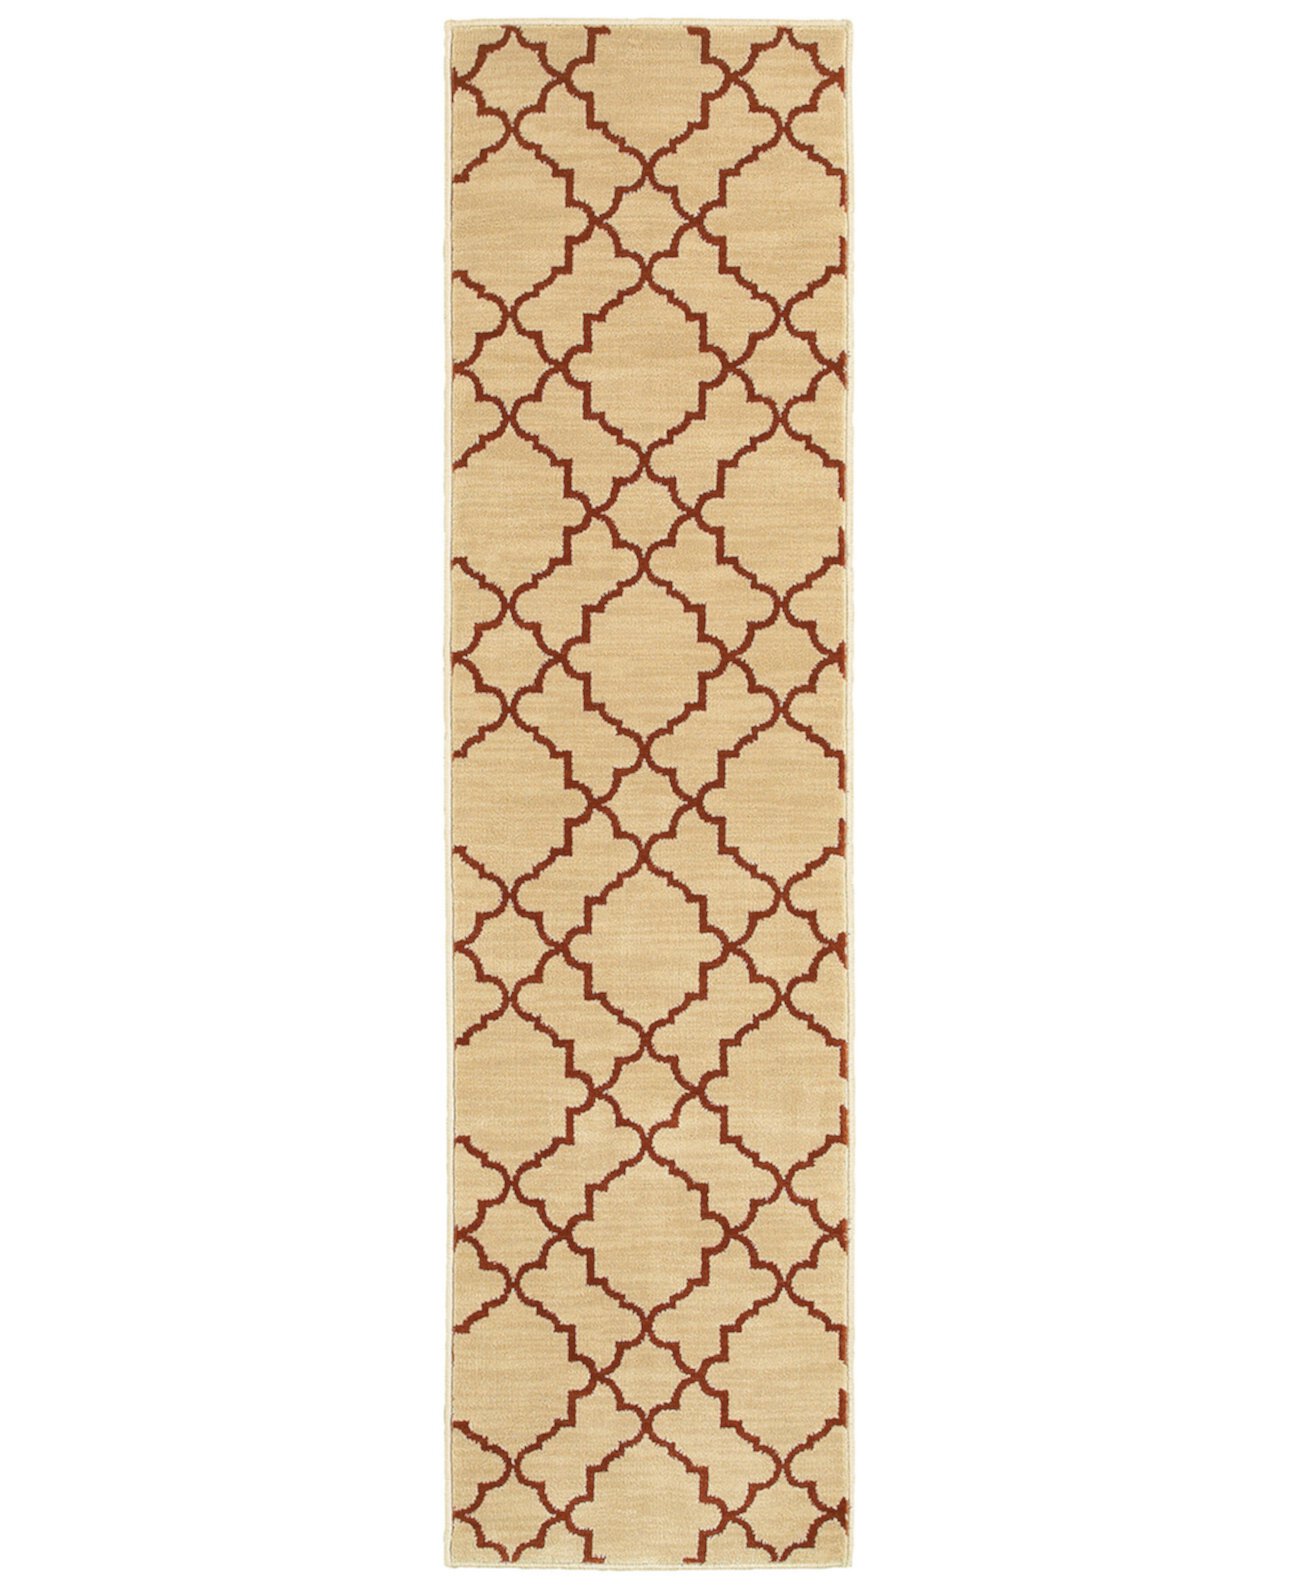 ЗАКРЫТИЕ! Casablanca 5178E Бежевый/Ржавый коврик размером 1 фут 10 x 7 футов 6 дюймов Oriental Weavers